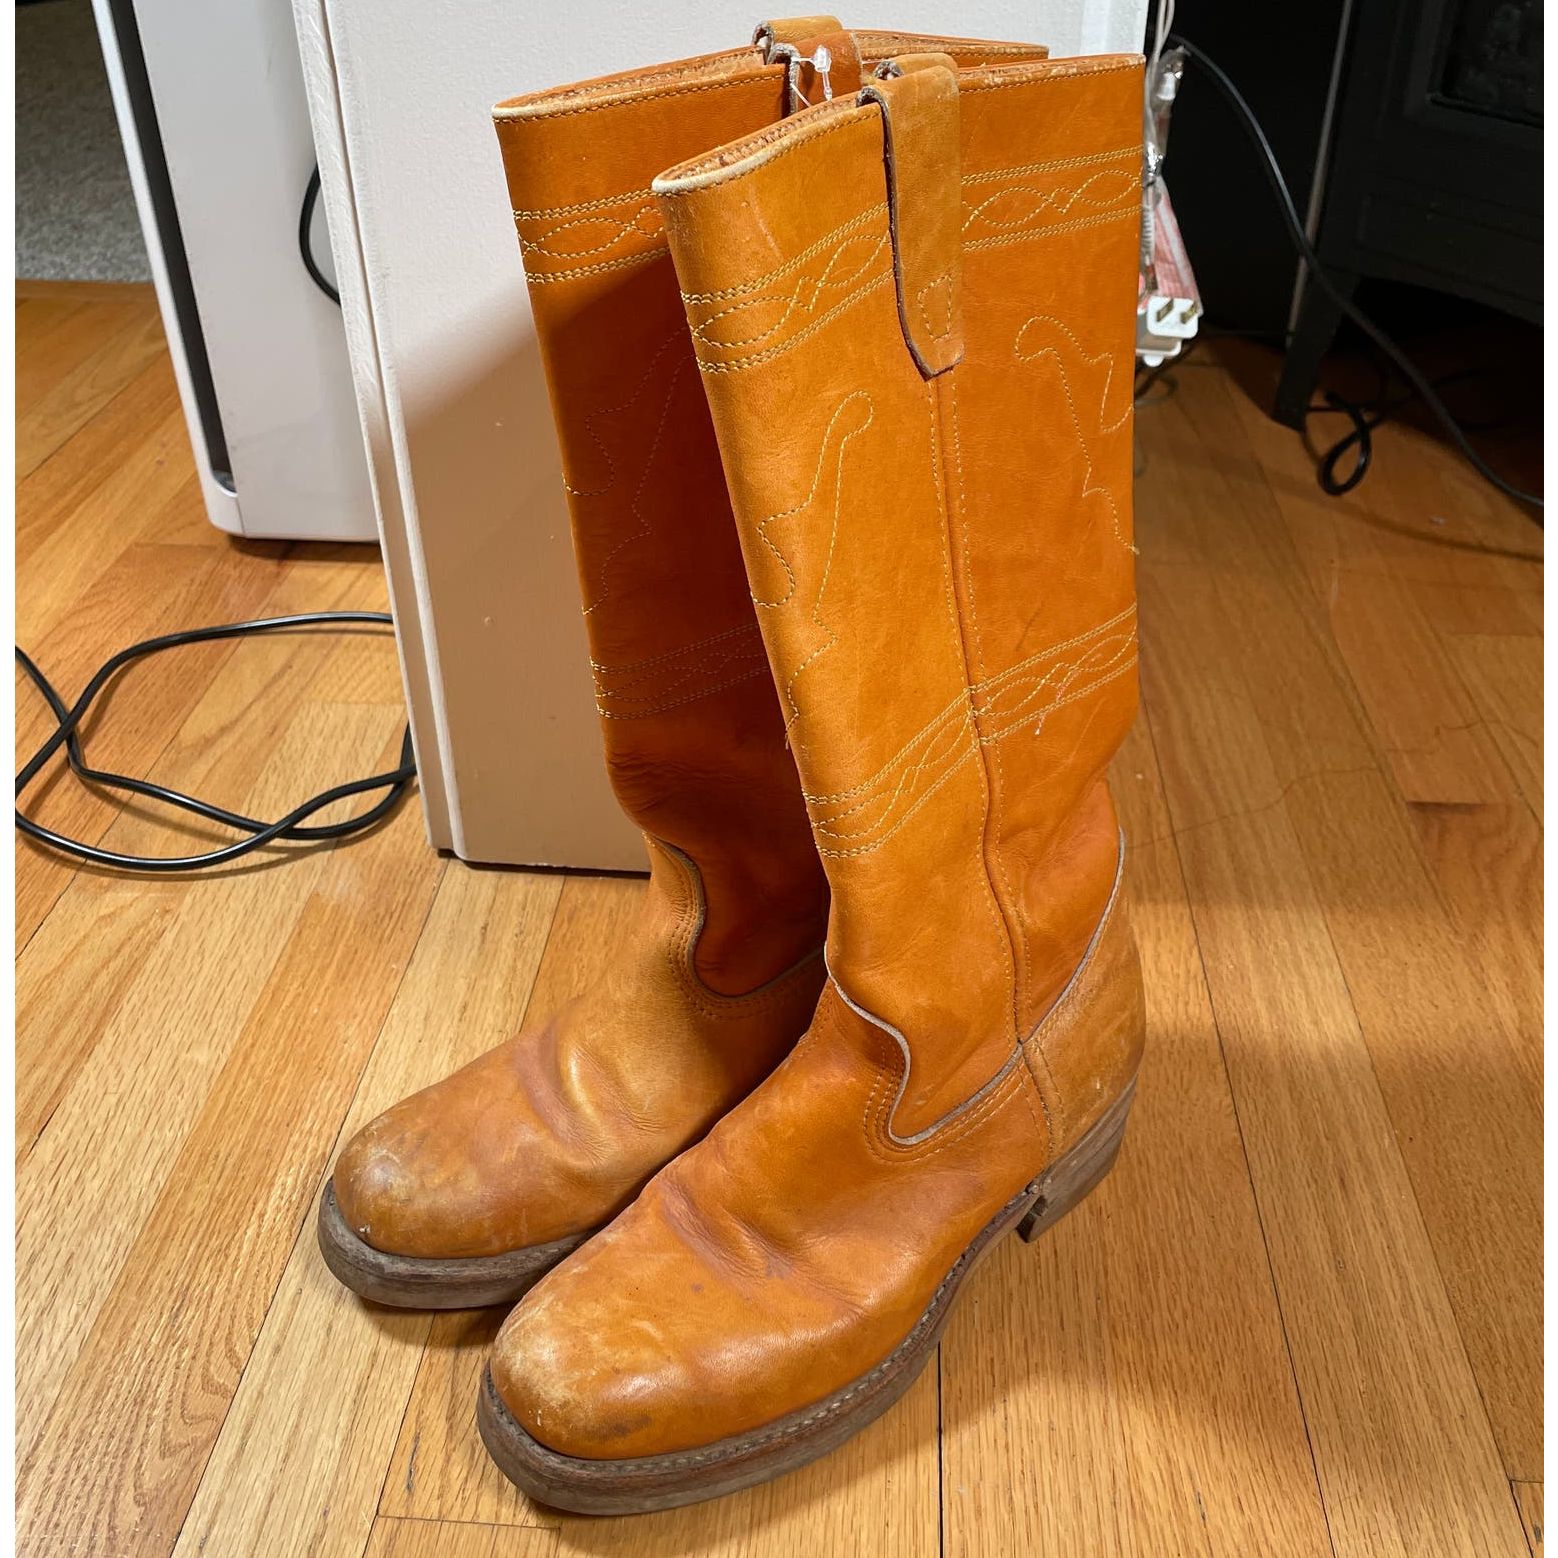 Vintage Vintage Leather Calf Boots 8 Mens Size US 8 / EU 41 - 1 Preview